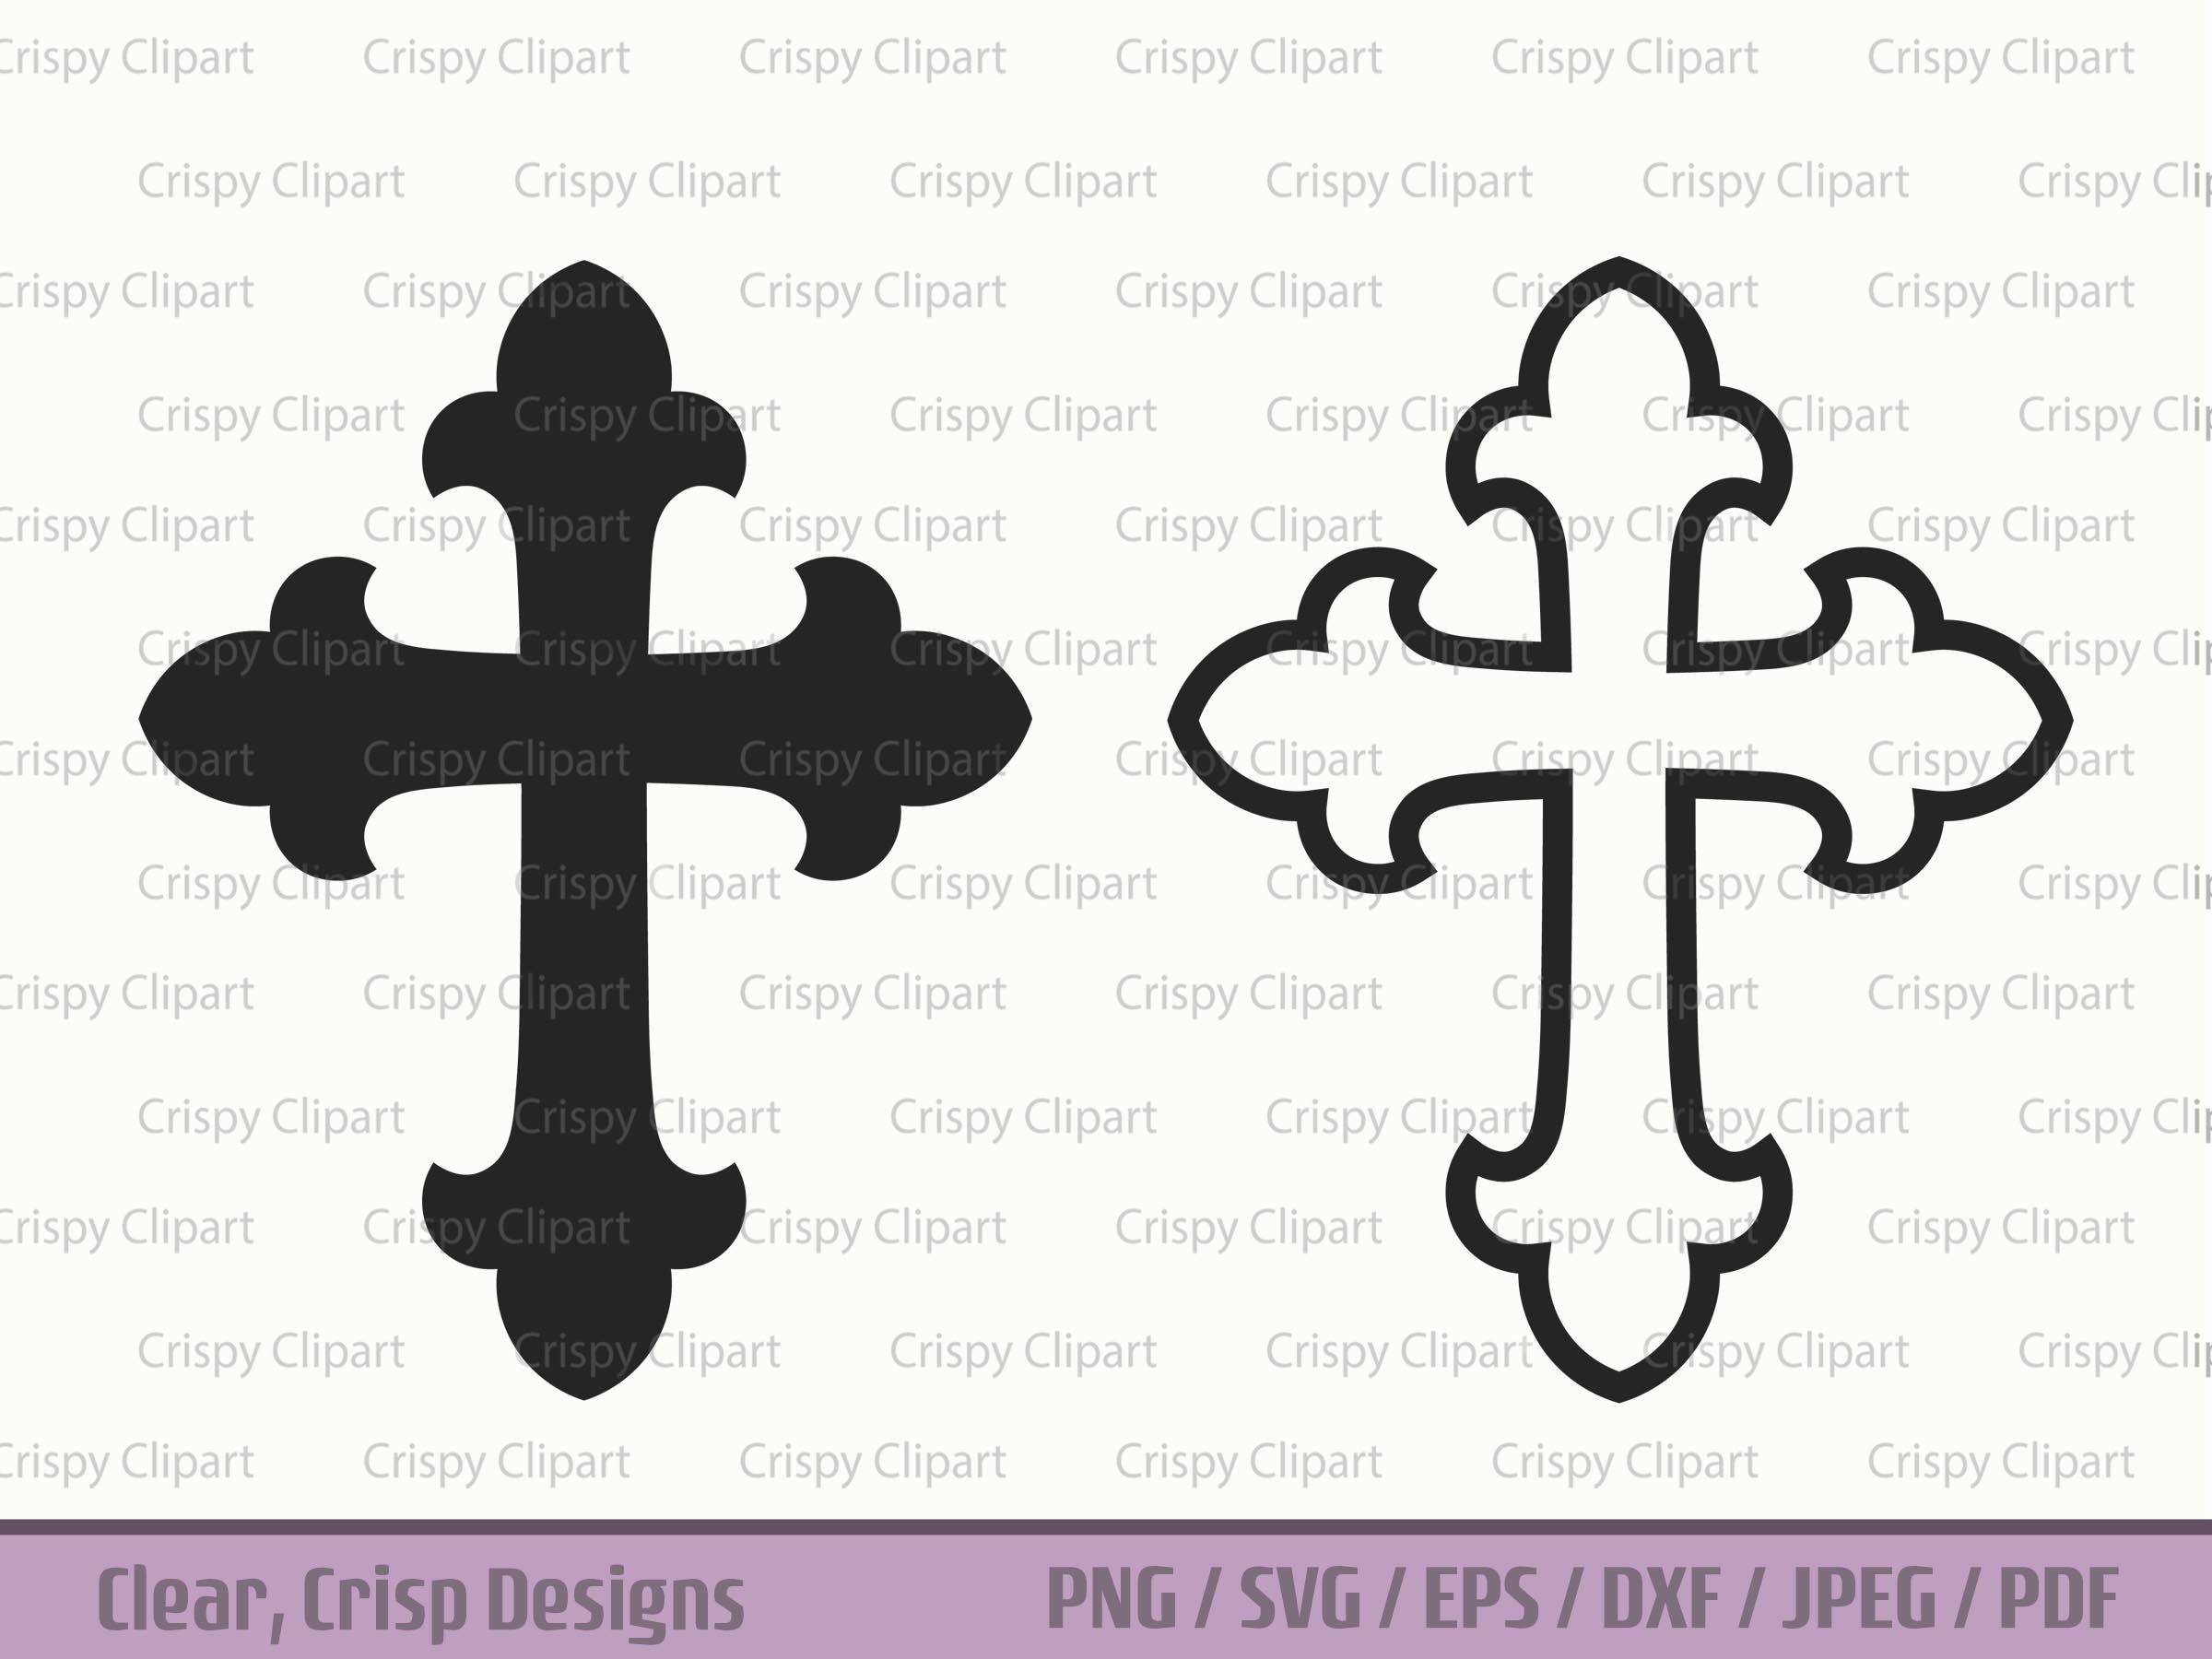 fancy cross silhouette